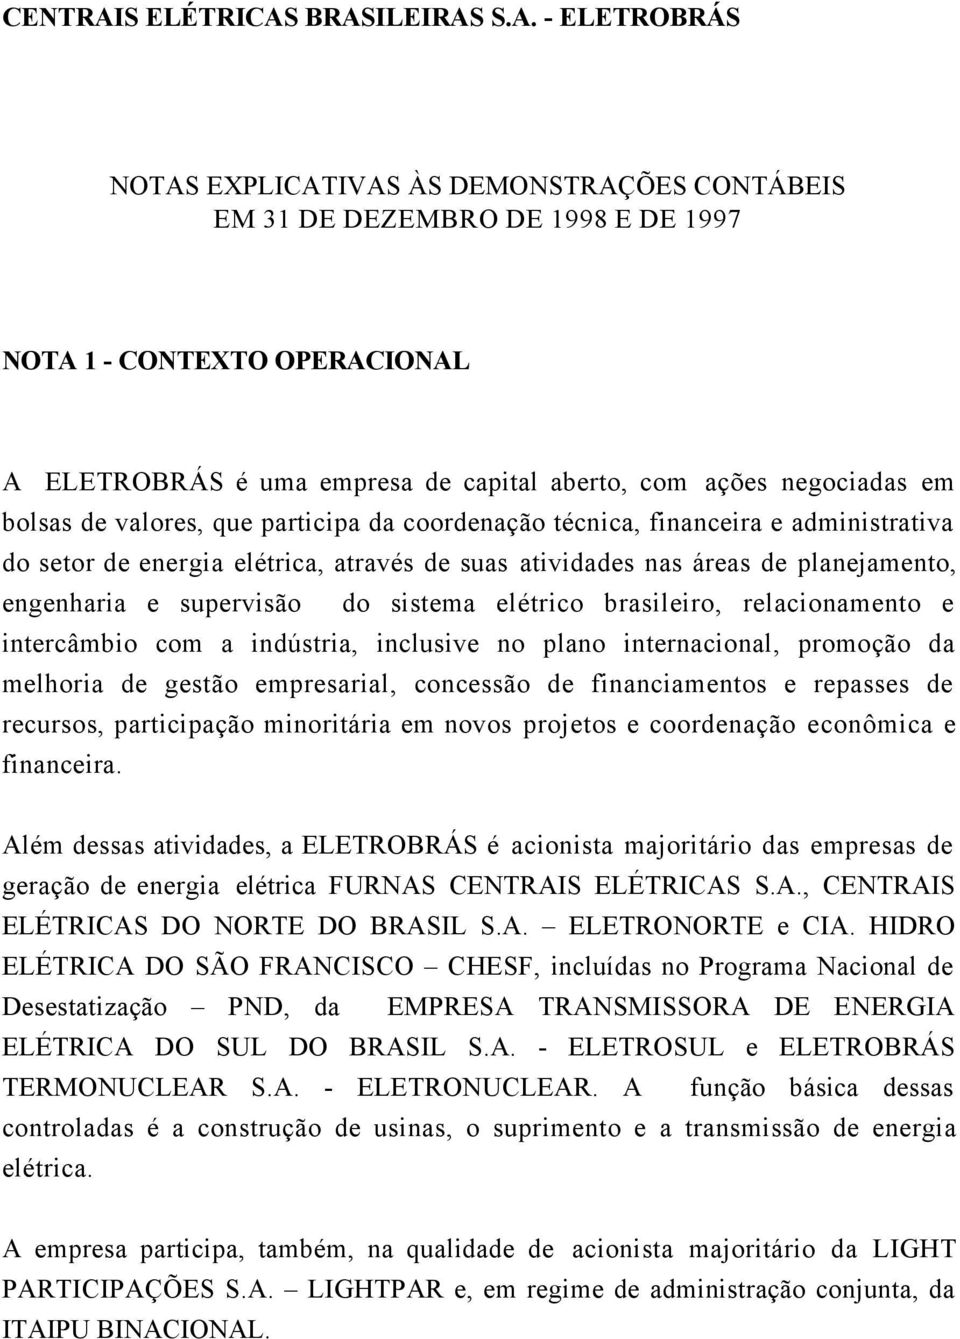 BRASILEIRAS S.A. - ELETROBRÁS NOTAS EXPLICATIVAS ÀS DEMONSTRAÇÕES CONTÁBEIS EM 31 DE DEZEMBRO DE 1998 E DE 1997 NOTA 1 - CONTEXTO OPERACIONAL A ELETROBRÁS é uma empresa de capital aberto, com ações